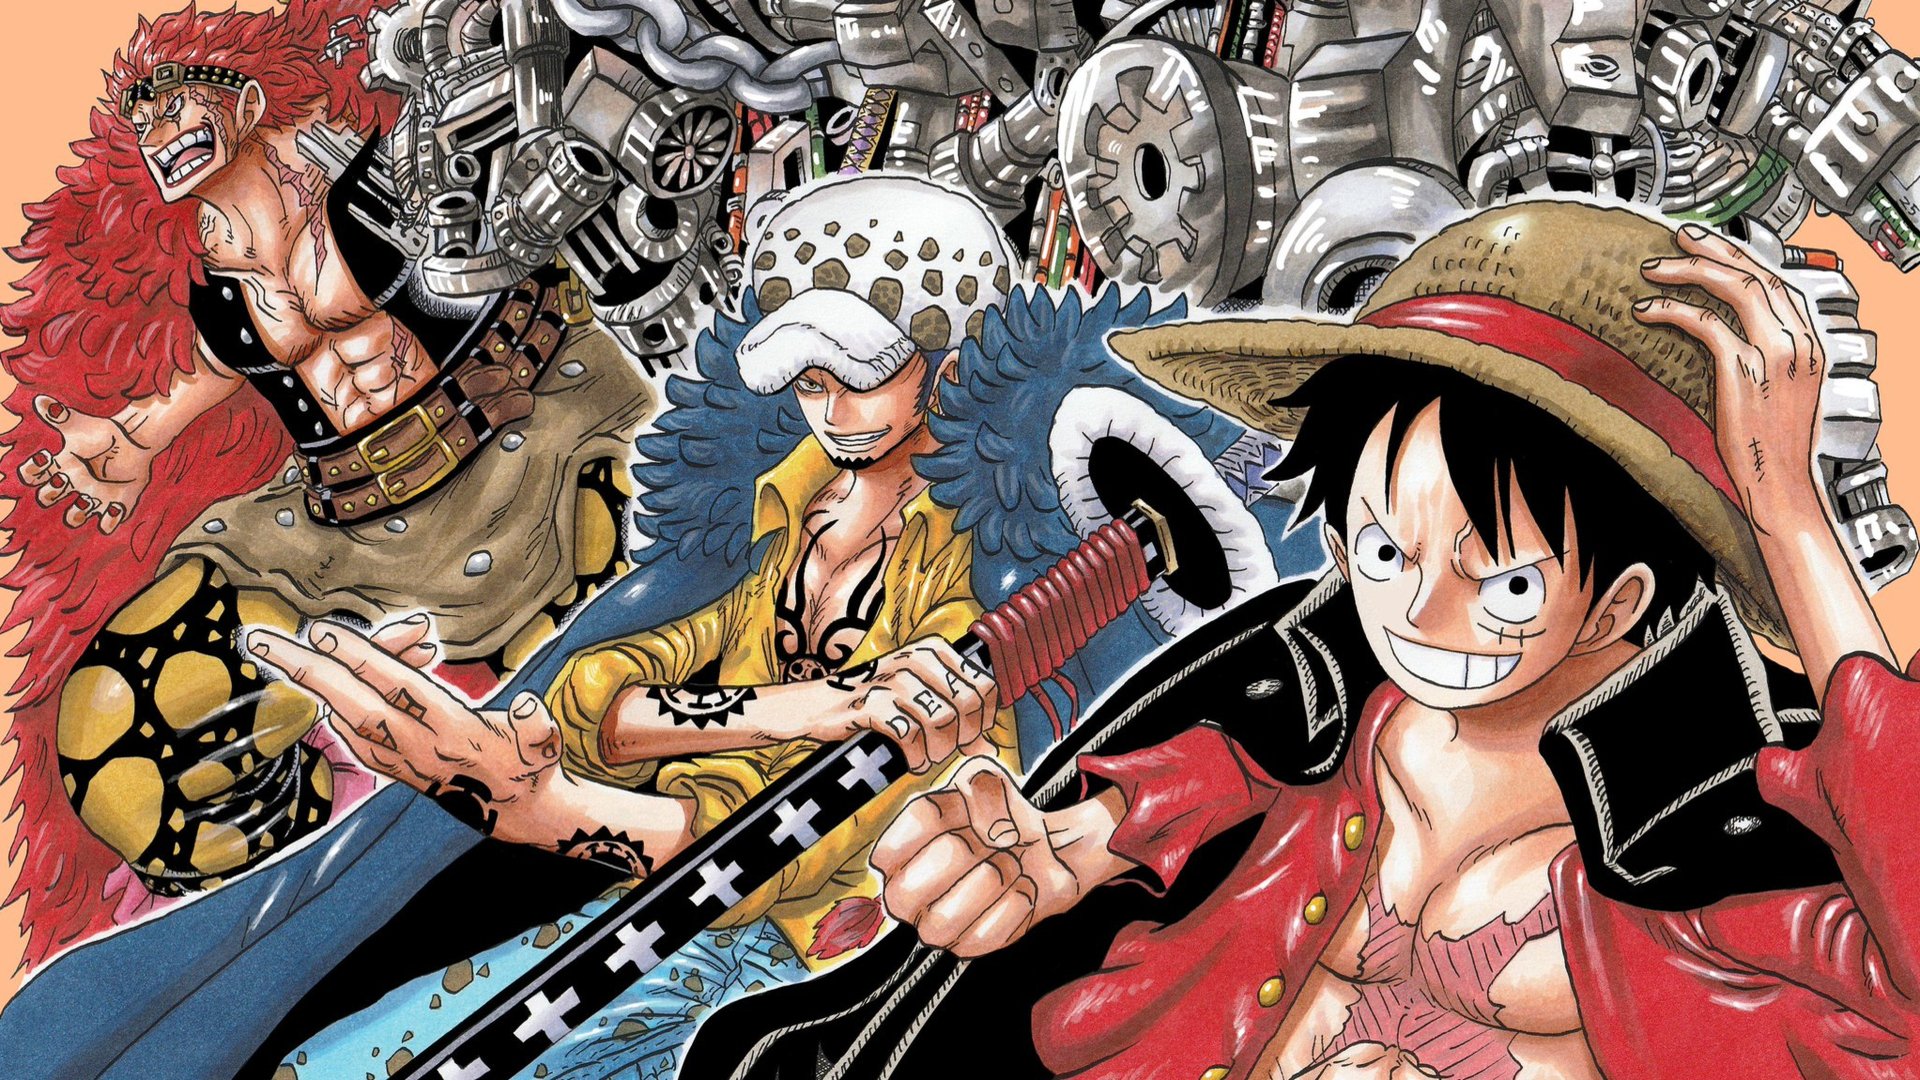 Law và Kid, hai nhân vật cực kỳ mạnh mẽ và đáng yêu trong One Piece. Hãy xem ảnh này để thấy cảnh hai nhân vật tuyệt vời này đang cùng nhau chiến đấu.